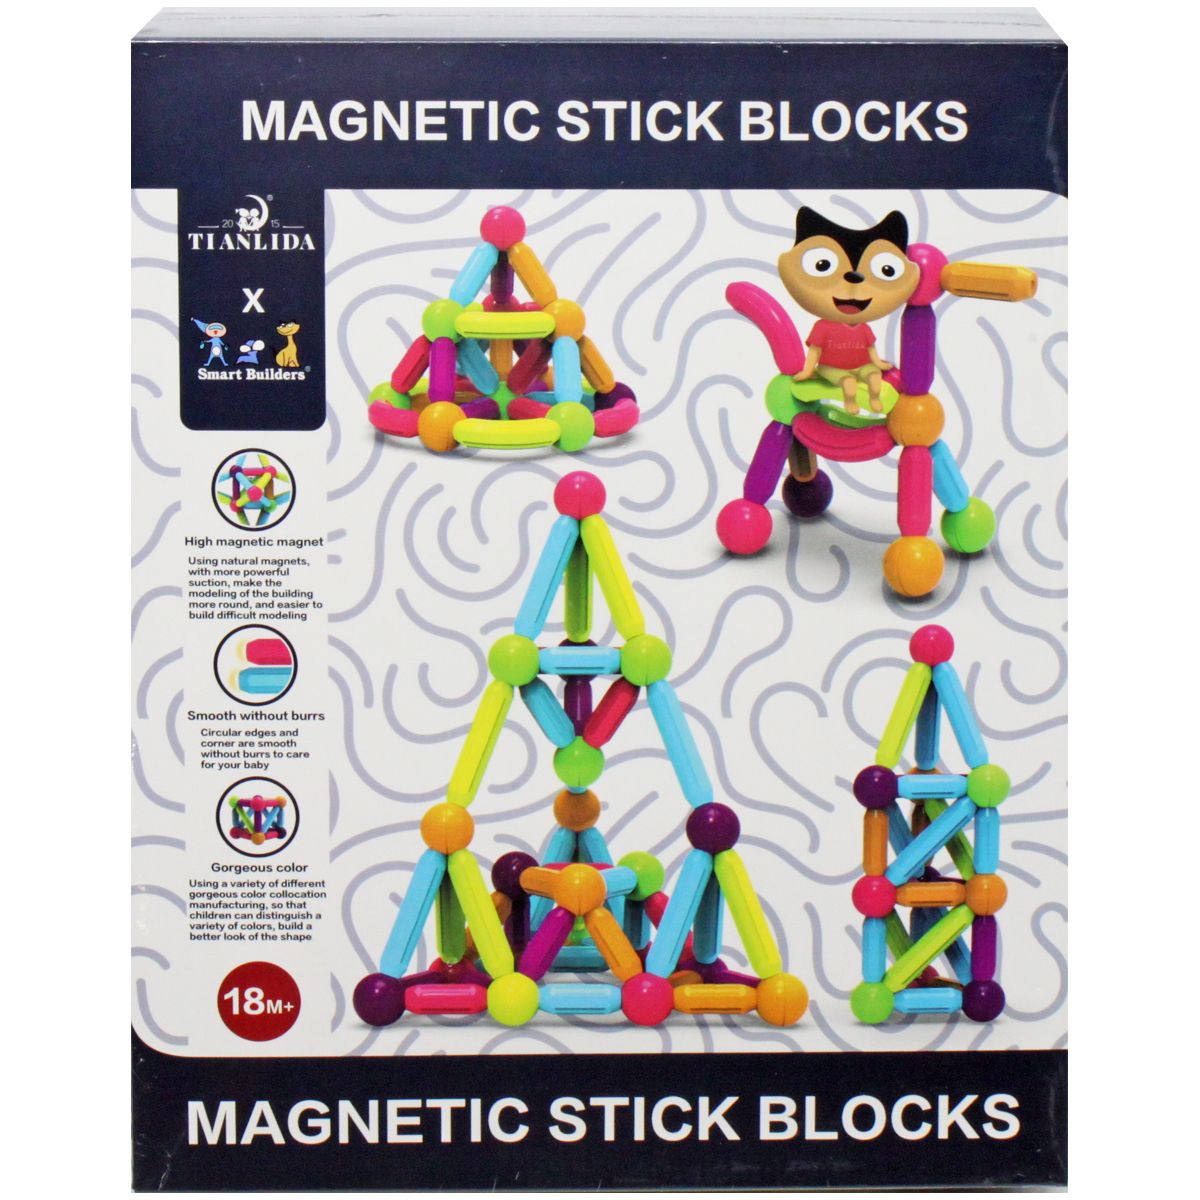 Конструктор магнитный "Magnetic stick blocks" (46 дет)